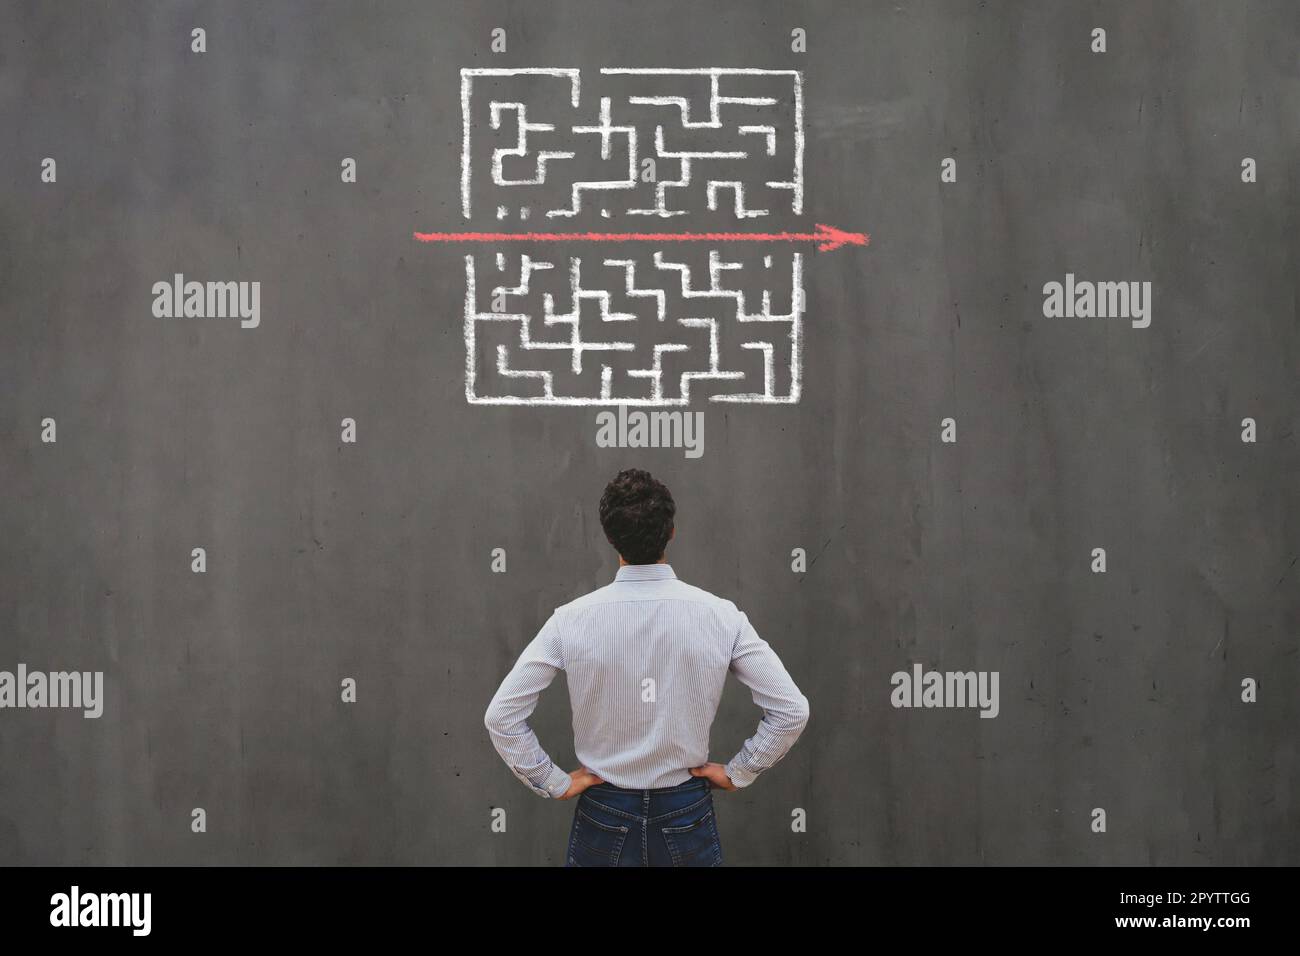 Einfaches, einfaches und schnelles Lösungskonzept, Problemlösung, Geschäftsmann, der über den Ausstieg aus dem Labyrinth nachdenkt Stockfoto